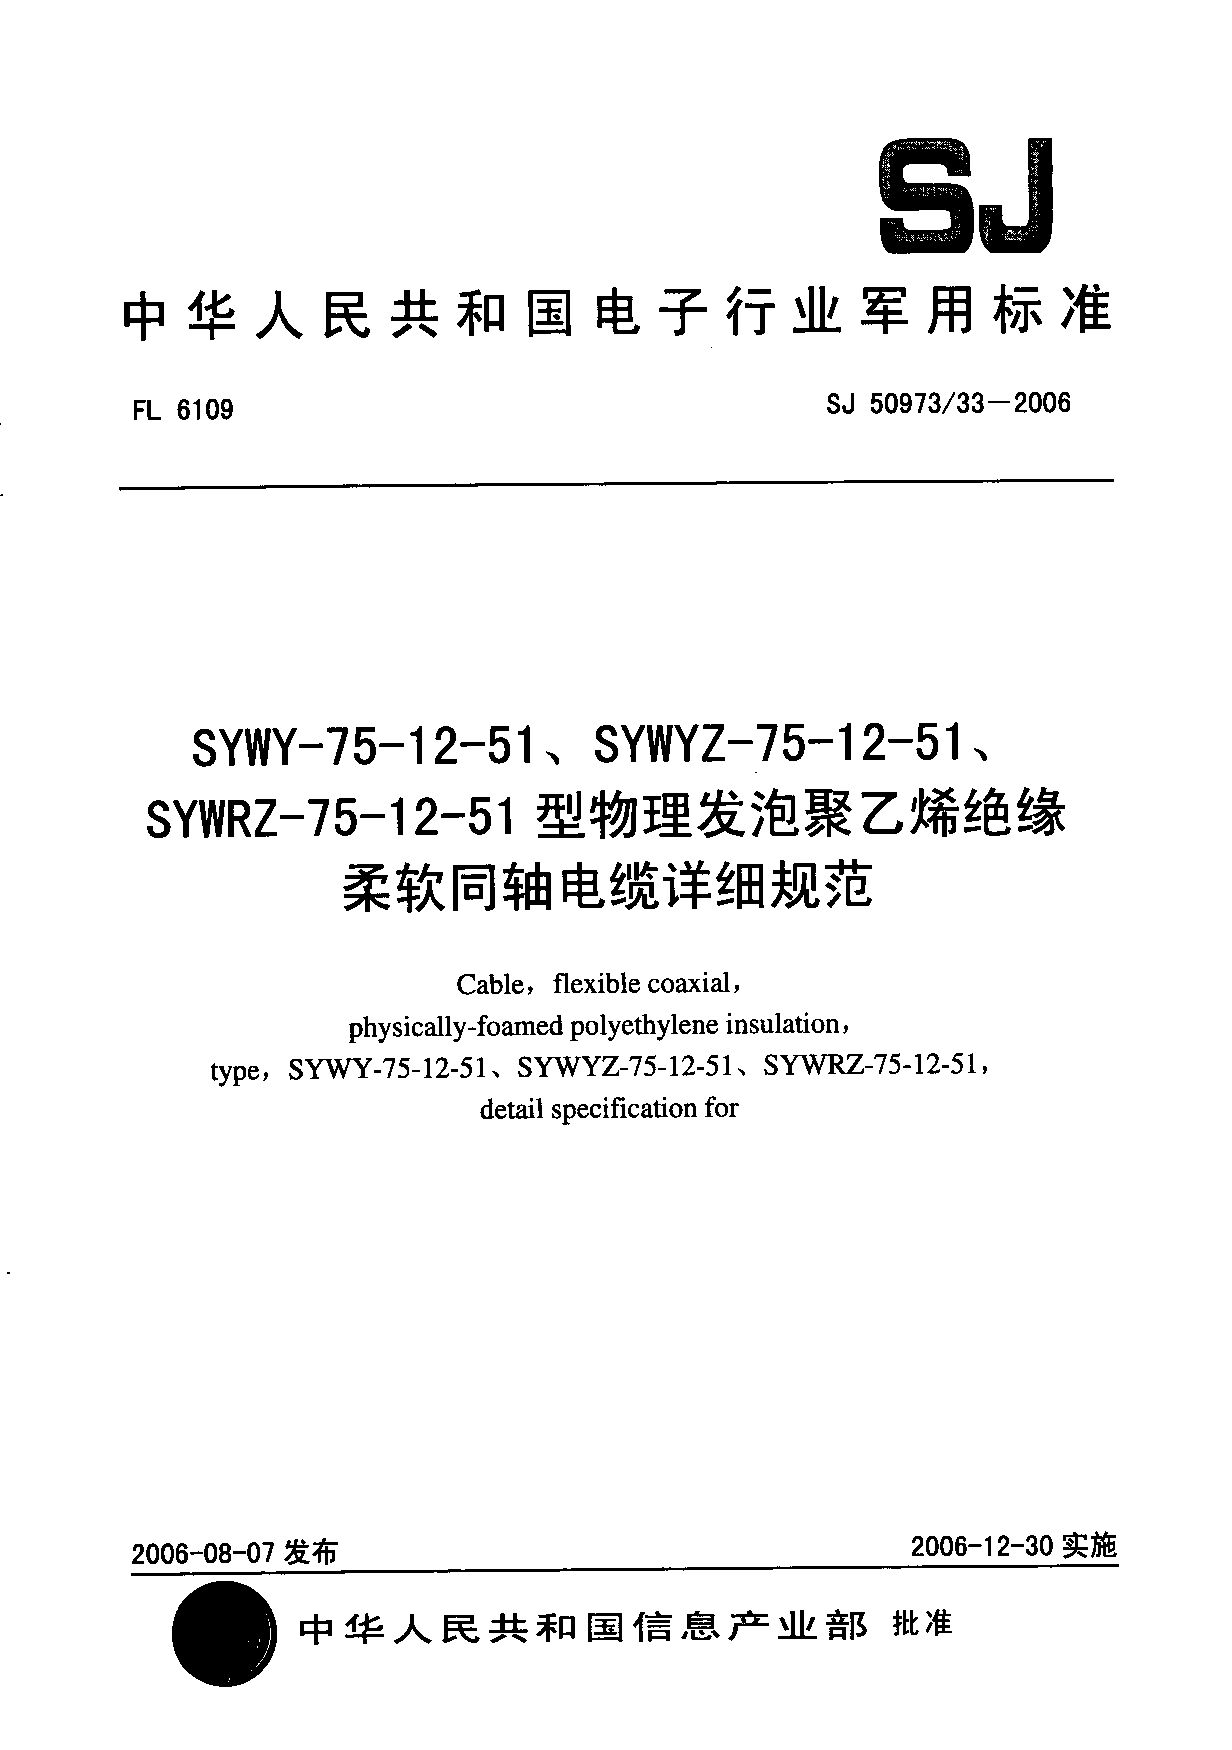 SJ 50973/33-2006封面图